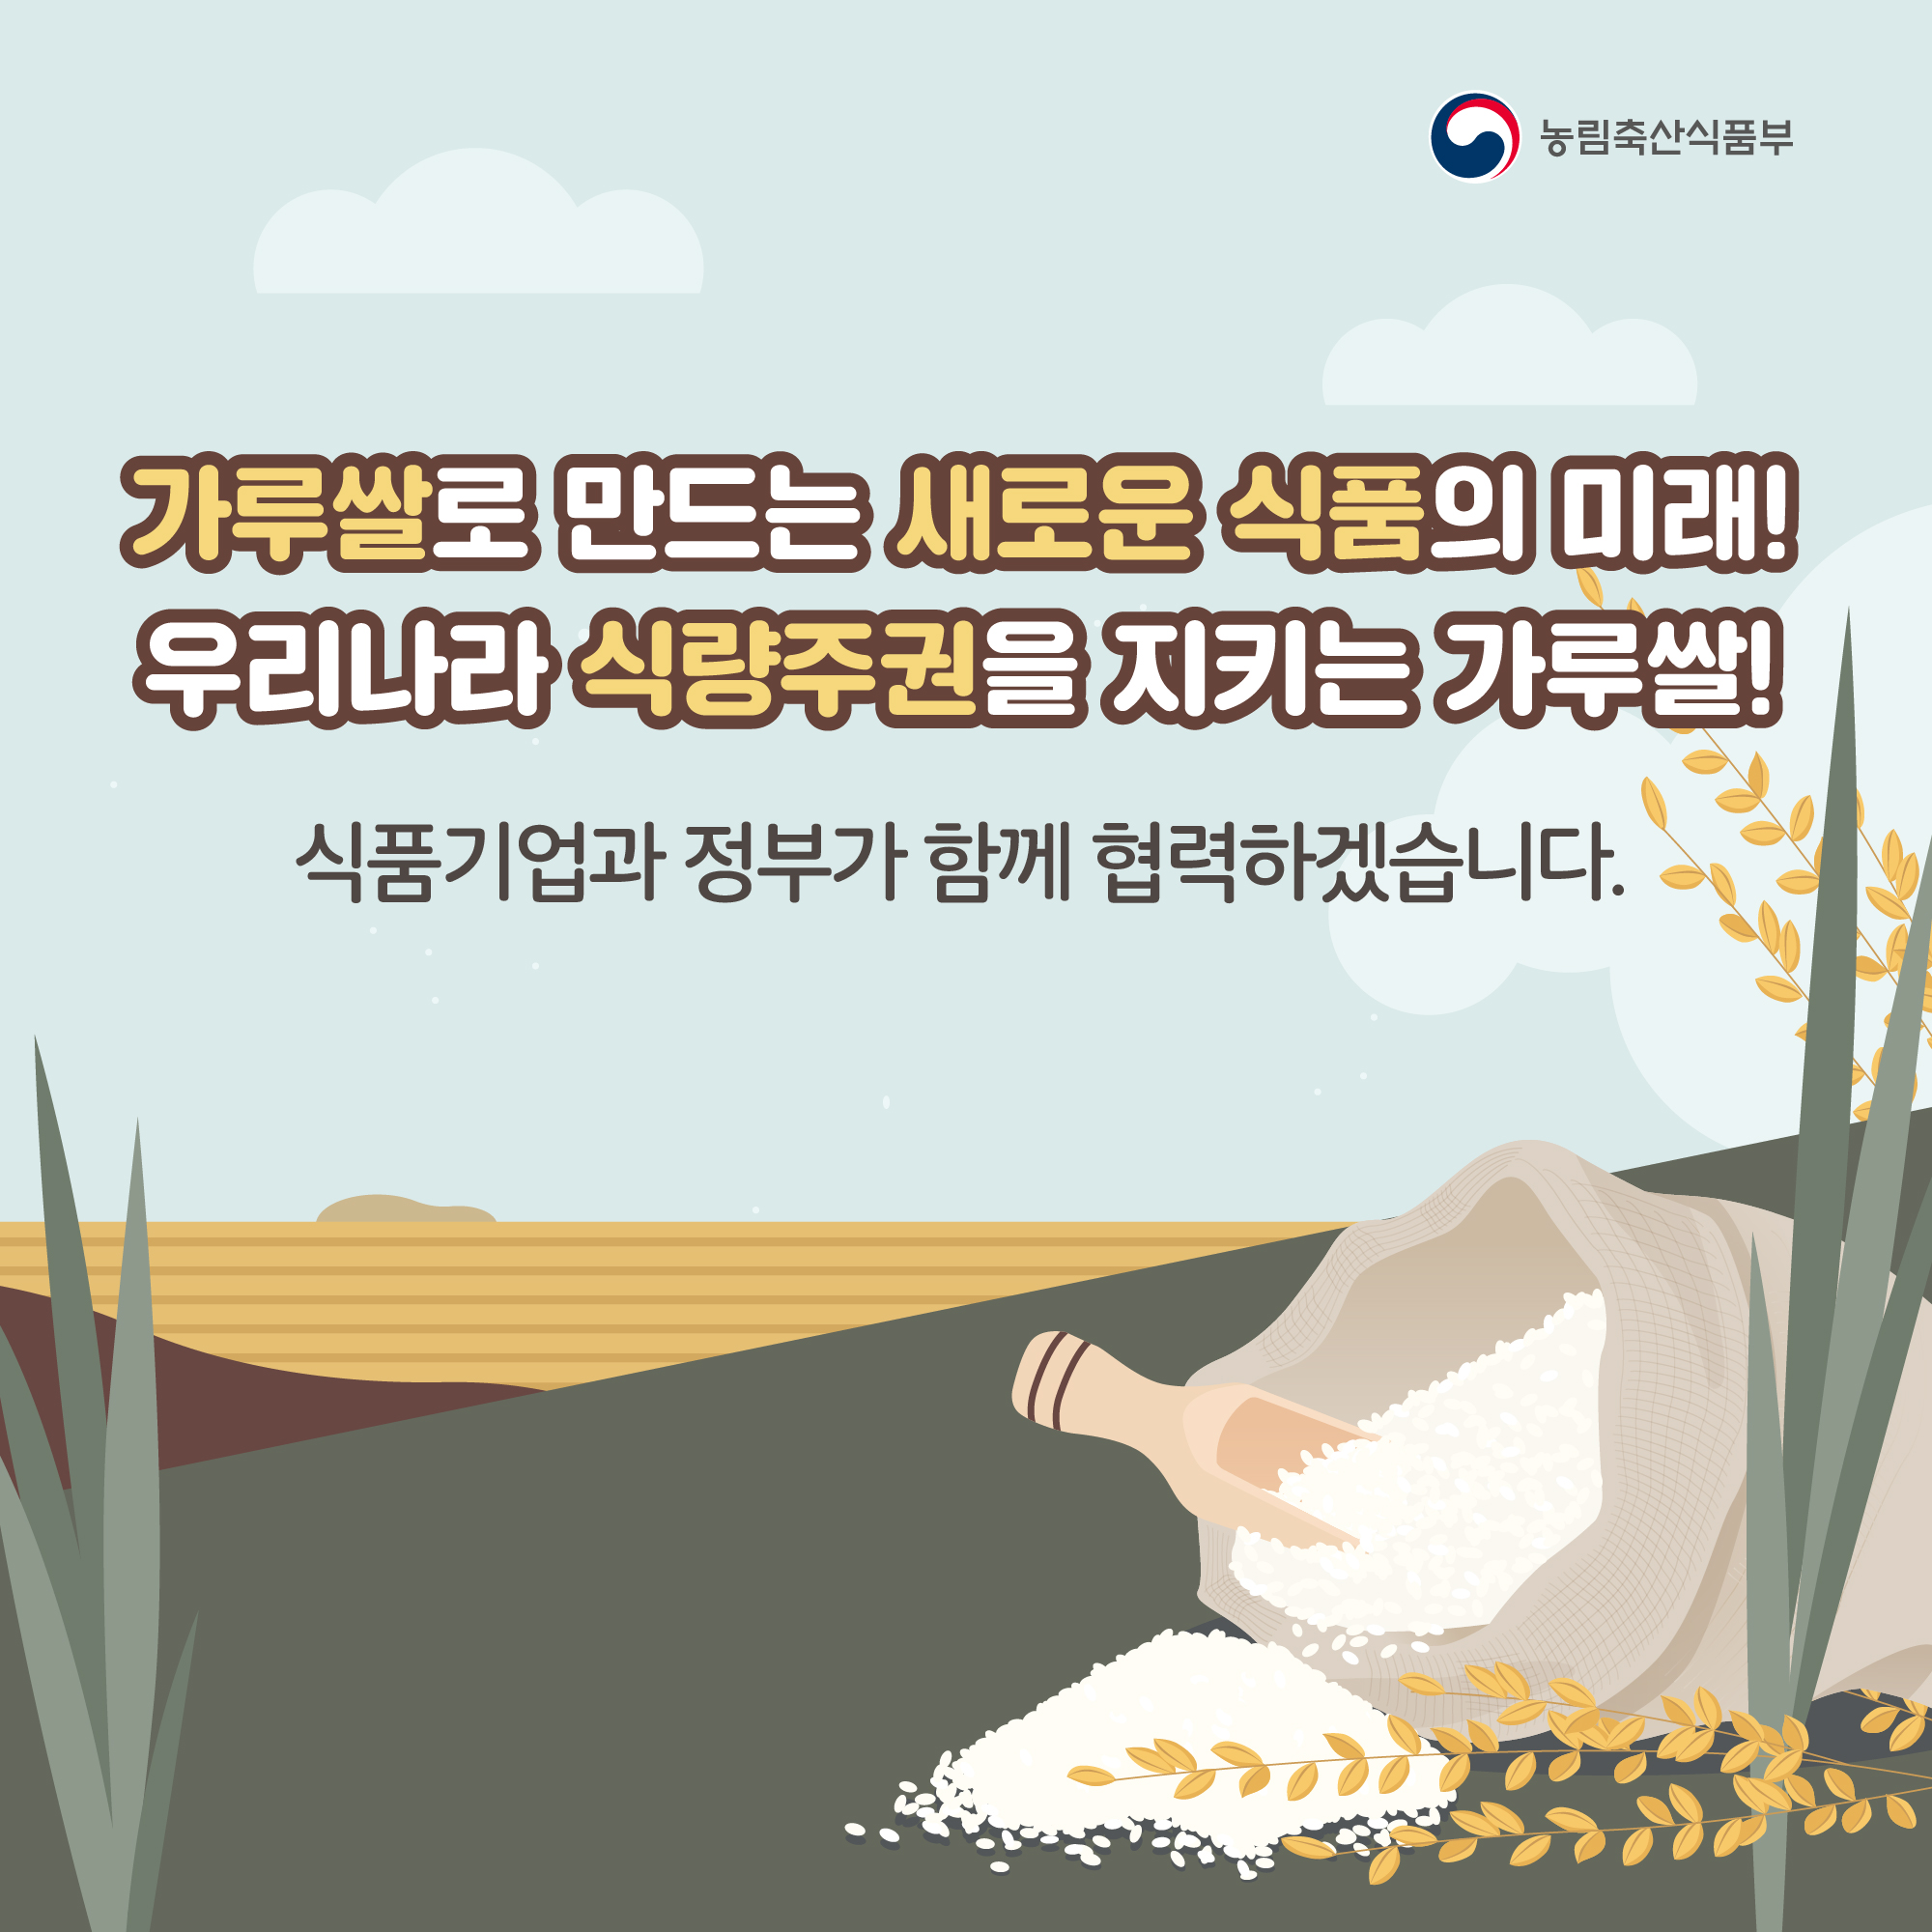 가루쌀로 만드는 새로운 식품의 미래! 우리나라 식량주권을 지키는 가루쌀! 식품기업과 정부가 함께 협력하겠습니다. 농림축산식품부